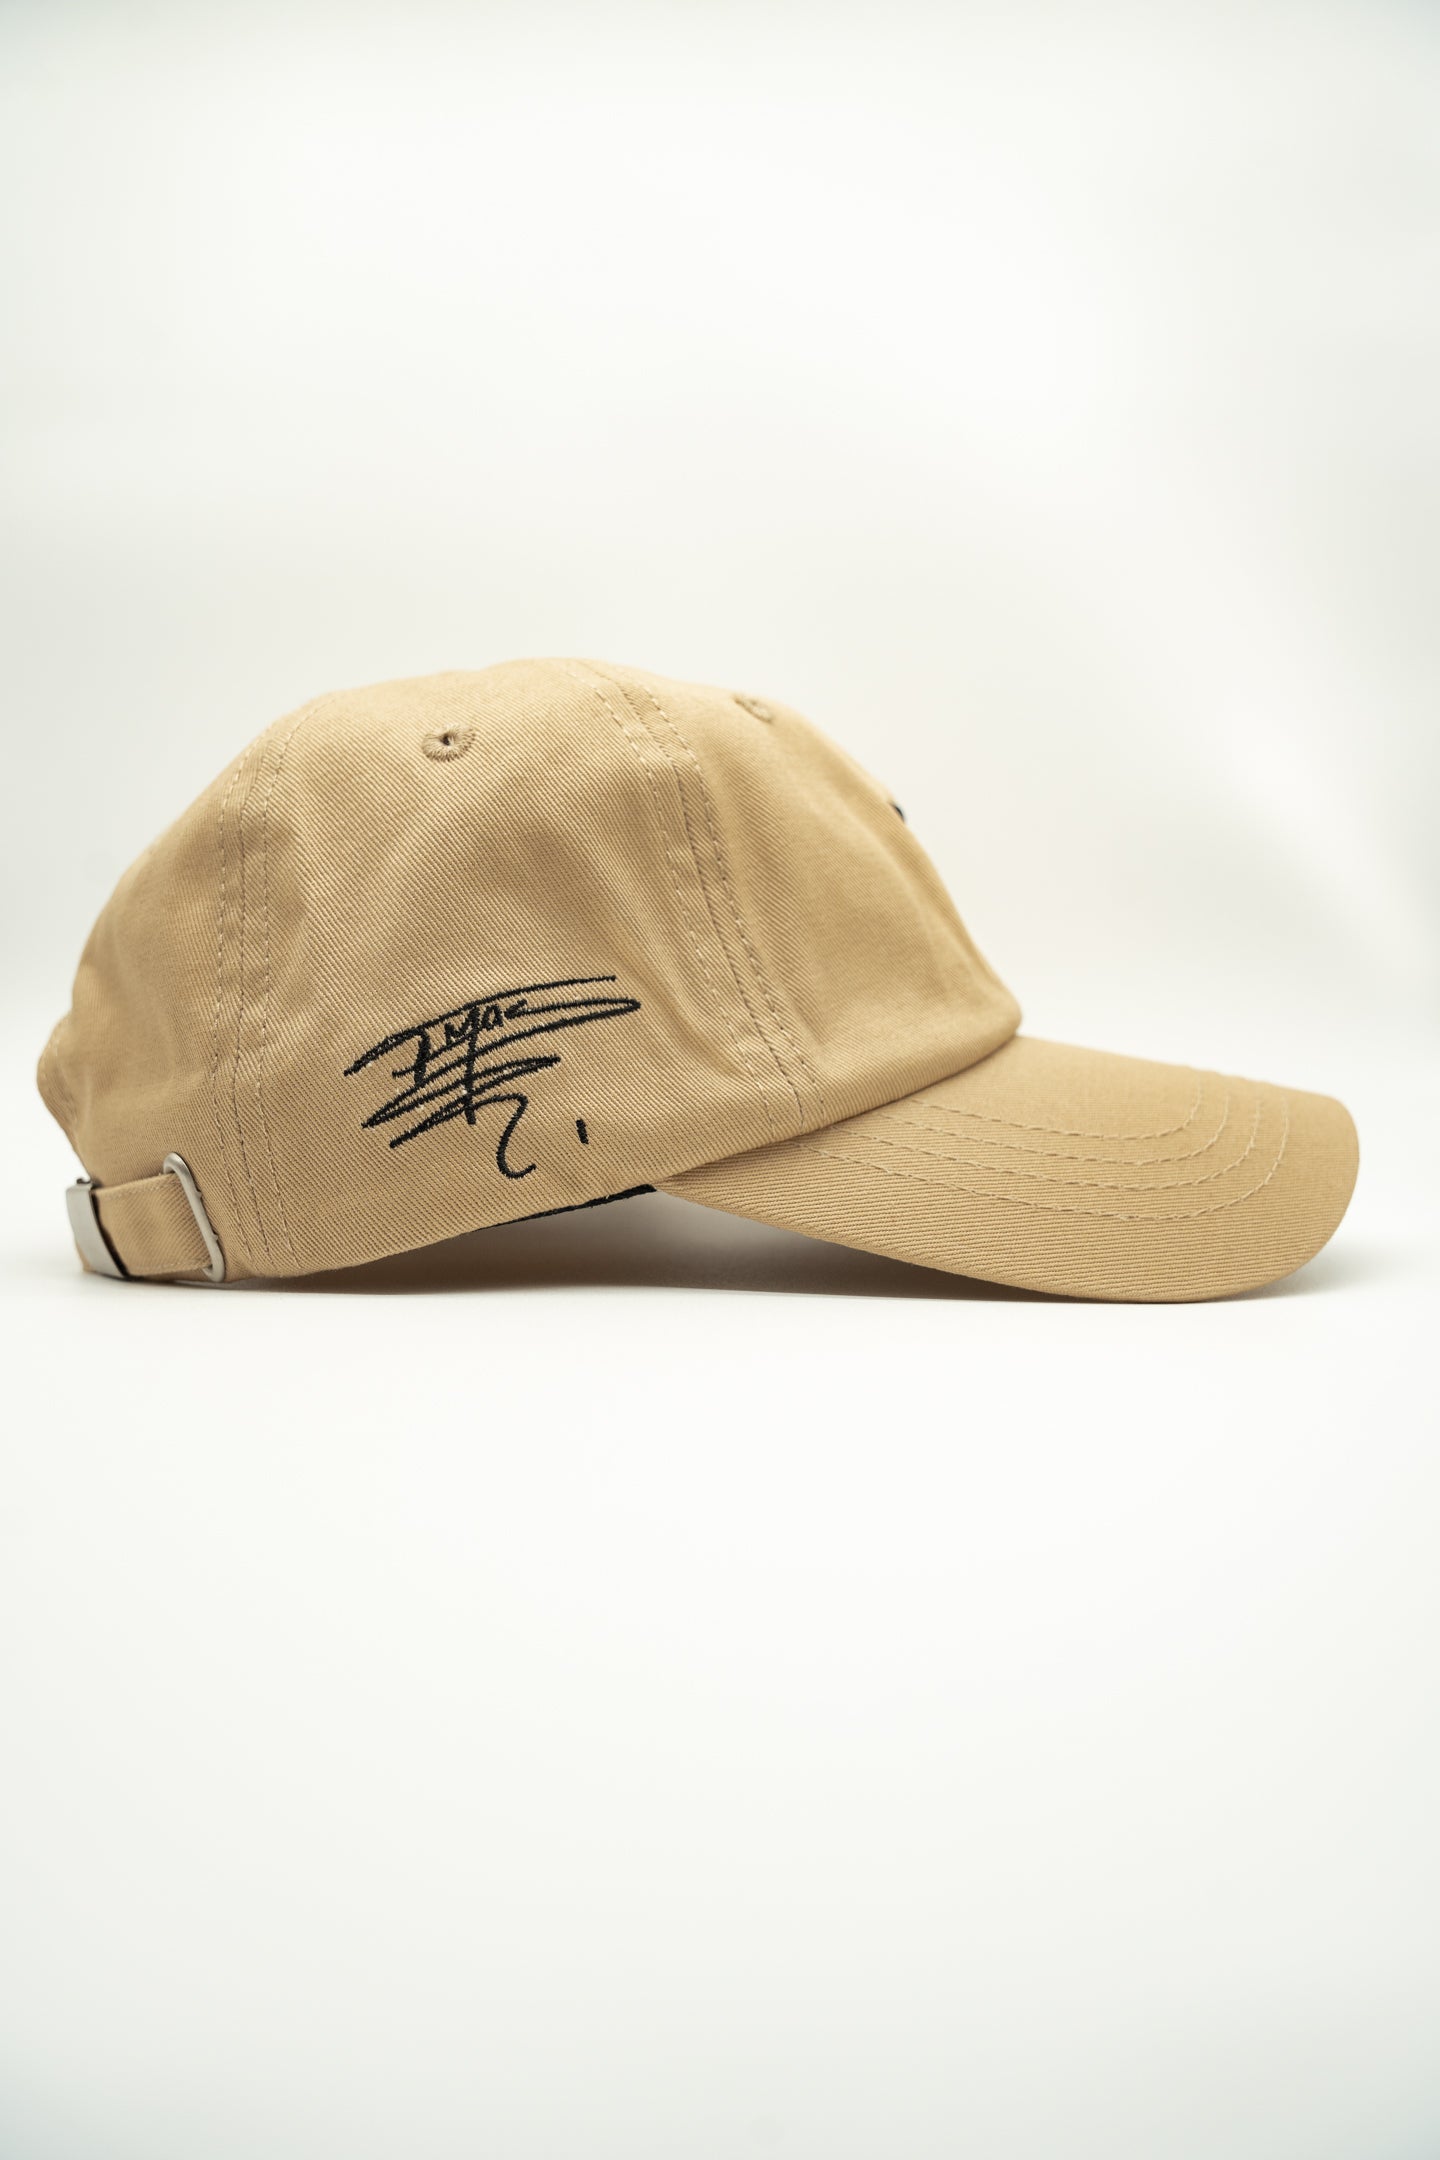 TM1 Tan Signature Dad Hat